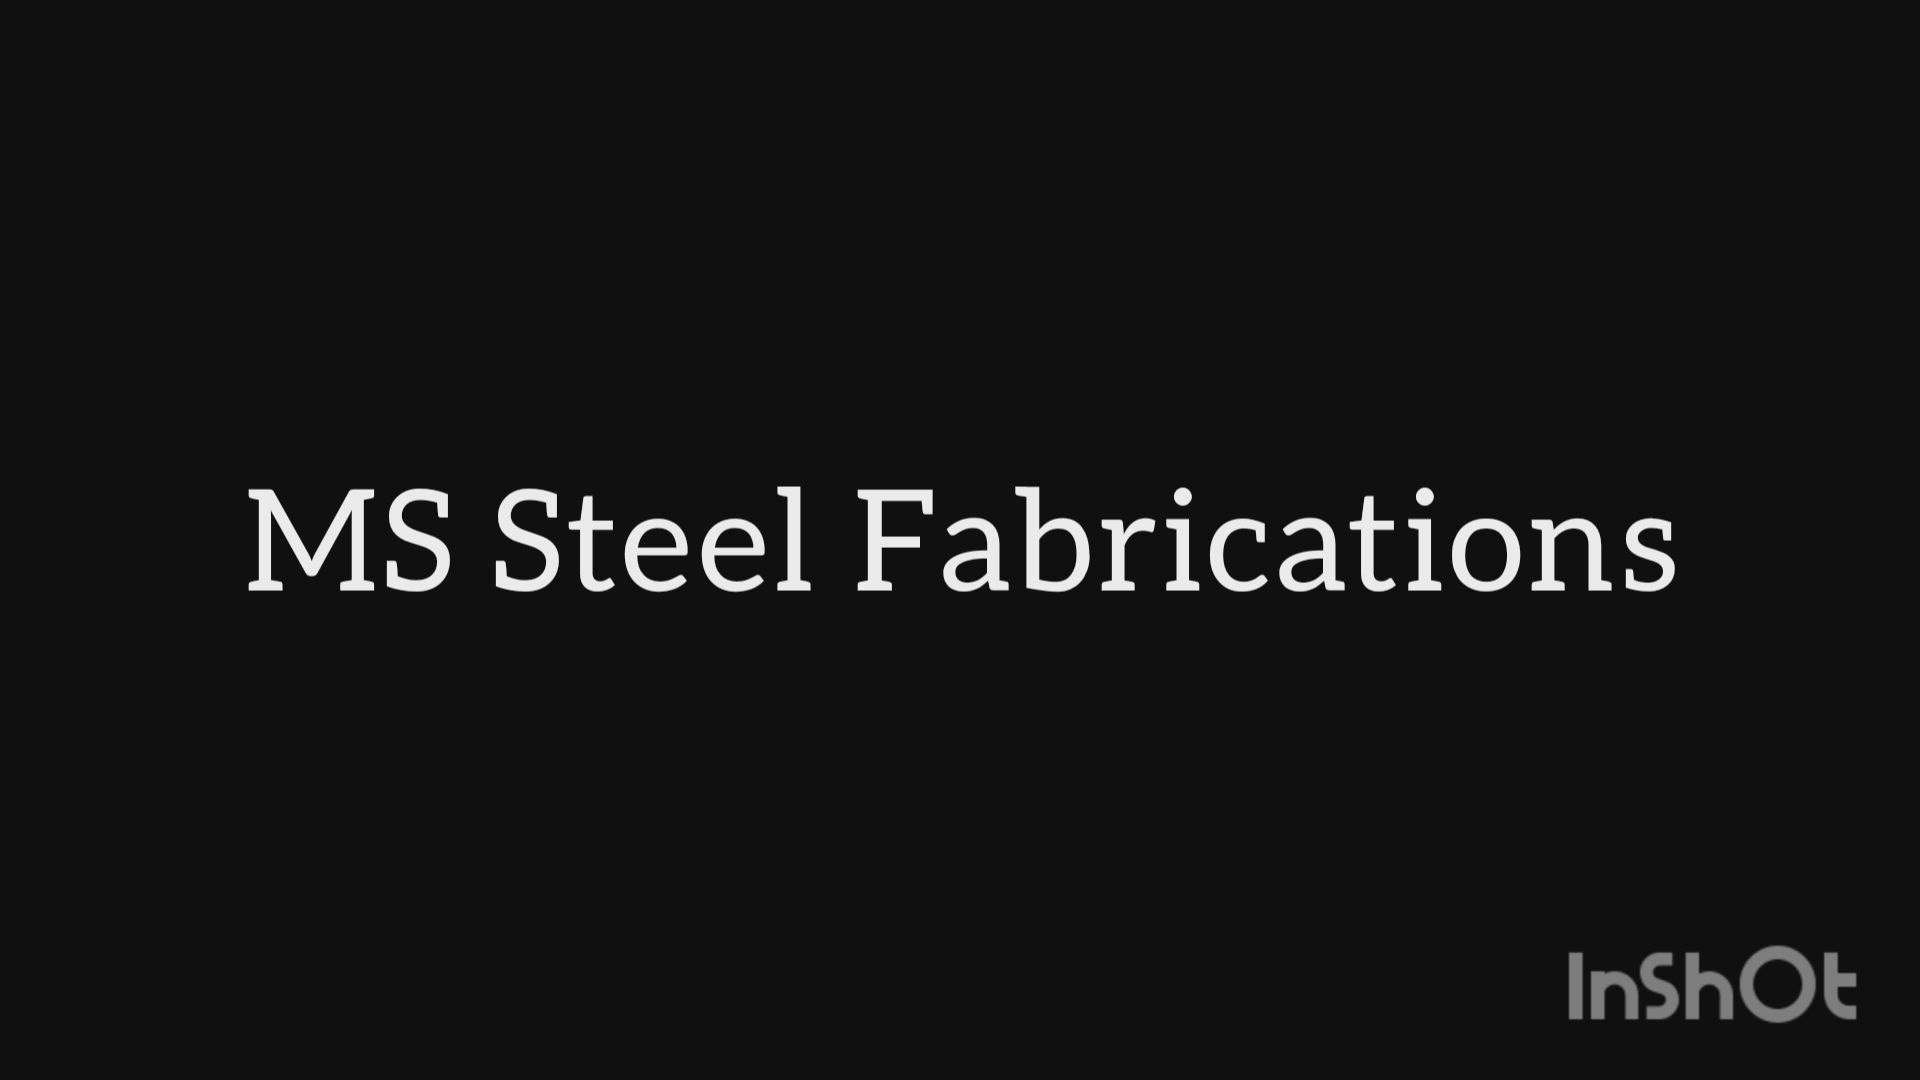 #mssteelfabrications  #teammssteelfabrications  #designbymssteelfabrications